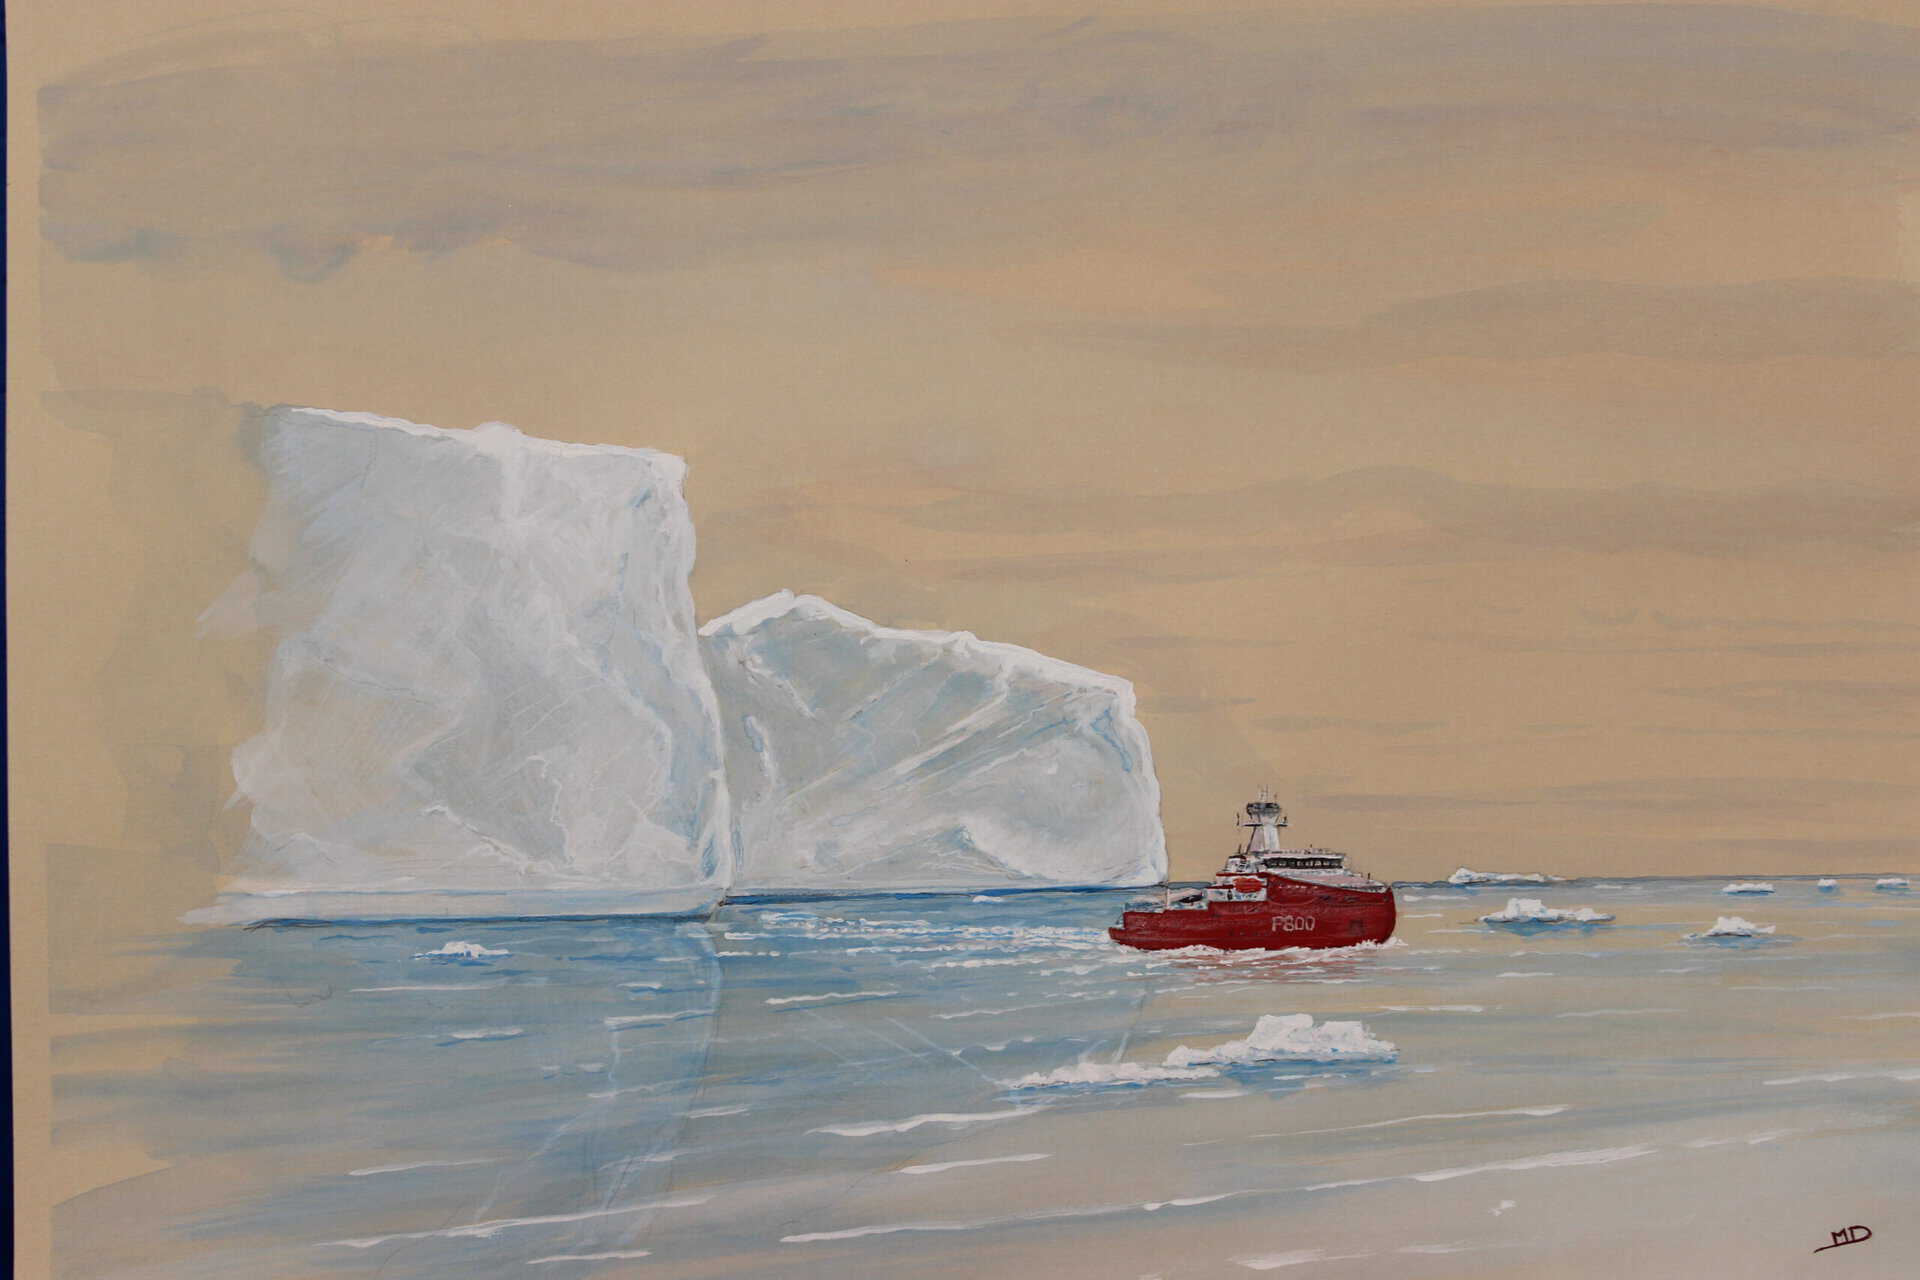 œuvre d'art, marine, gouache sur papier A3, david morel artiste, l'astrolabe P800 en antarctique avec iceberg